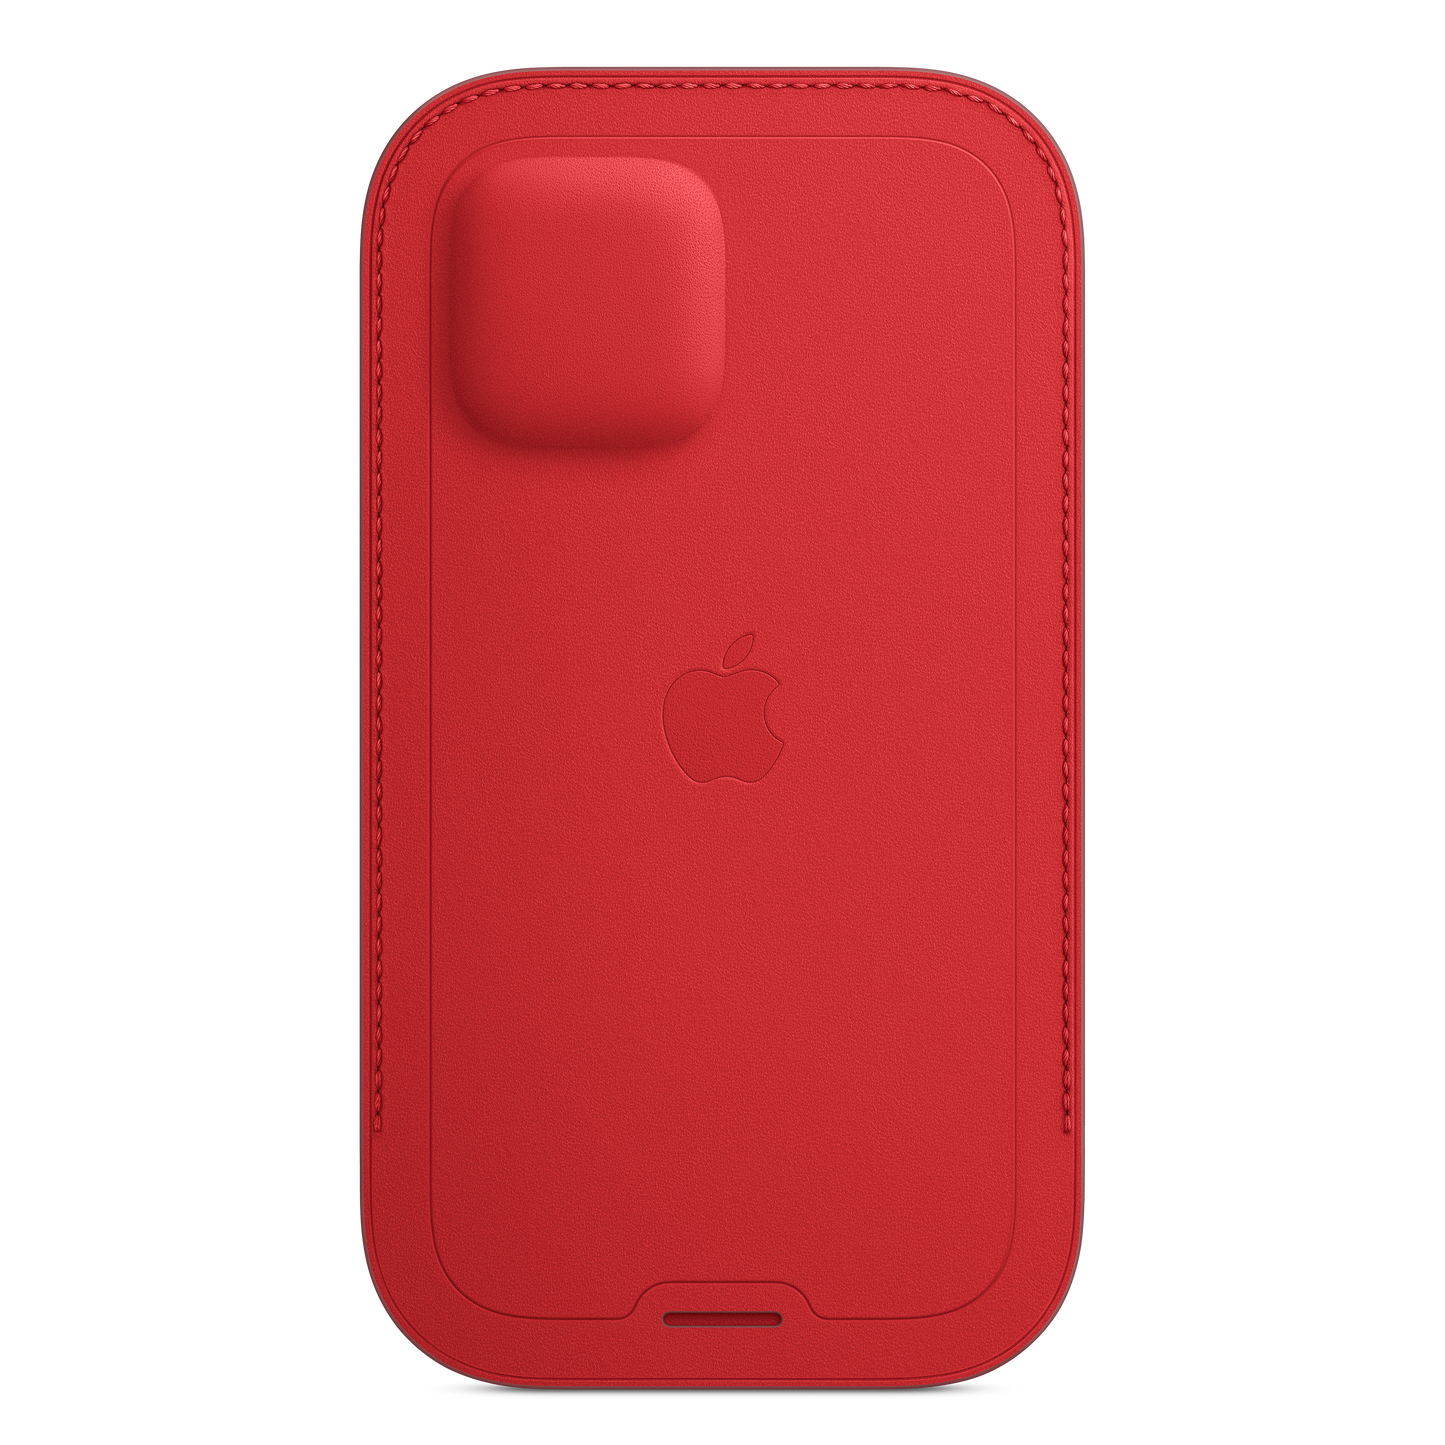 Funda integral de piel con MagSafe para el iPhone 12 y iPhone 12 Pro, (PRODUCT)RED - Rossellimac